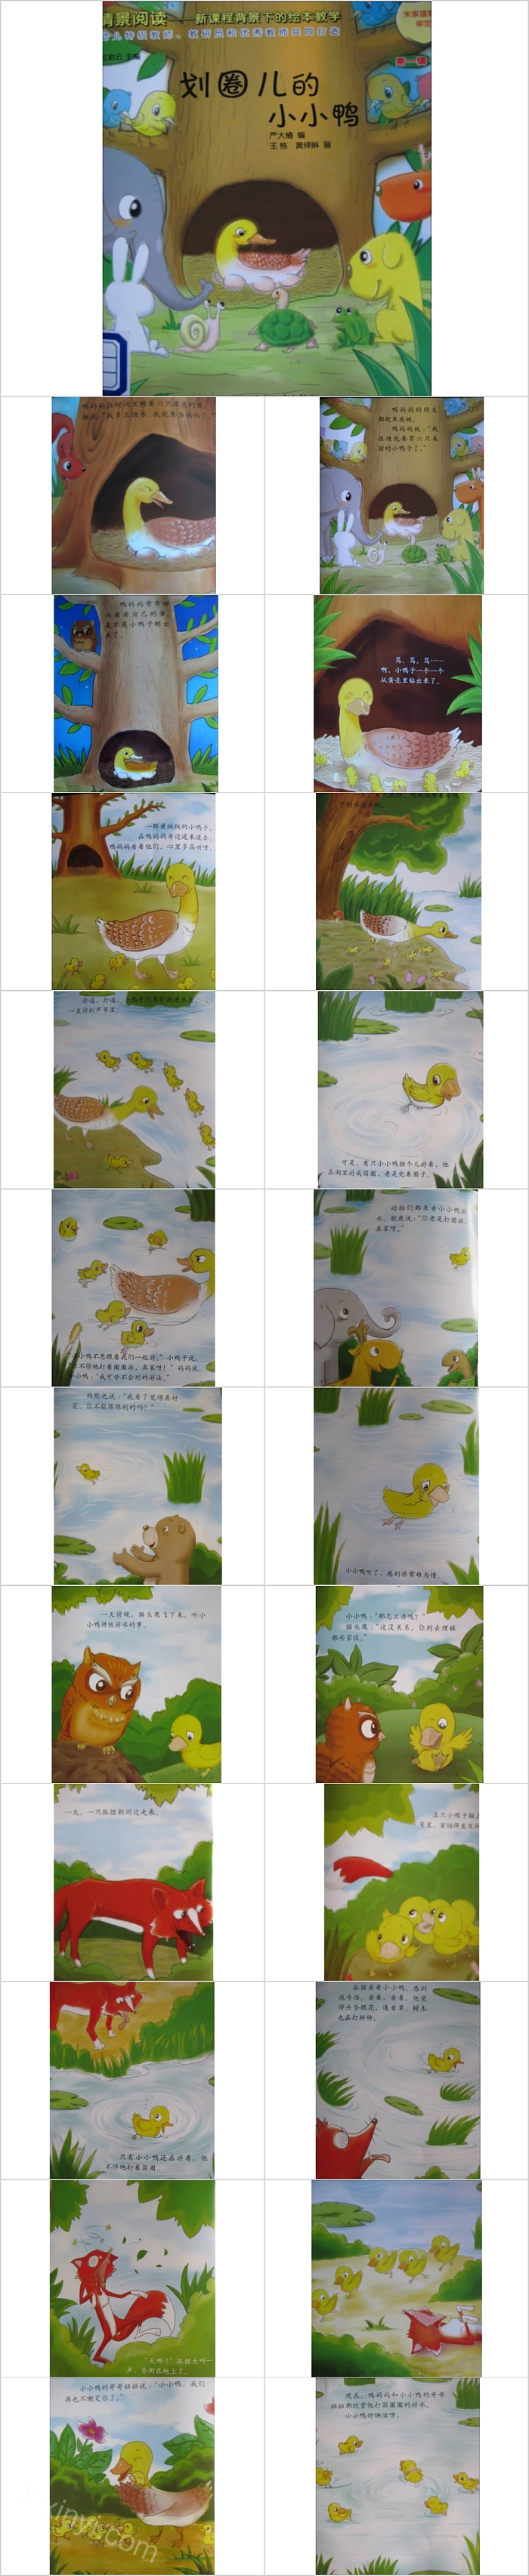 划圈儿的小小鸭幼儿园绘本故事教育课件PPT模板